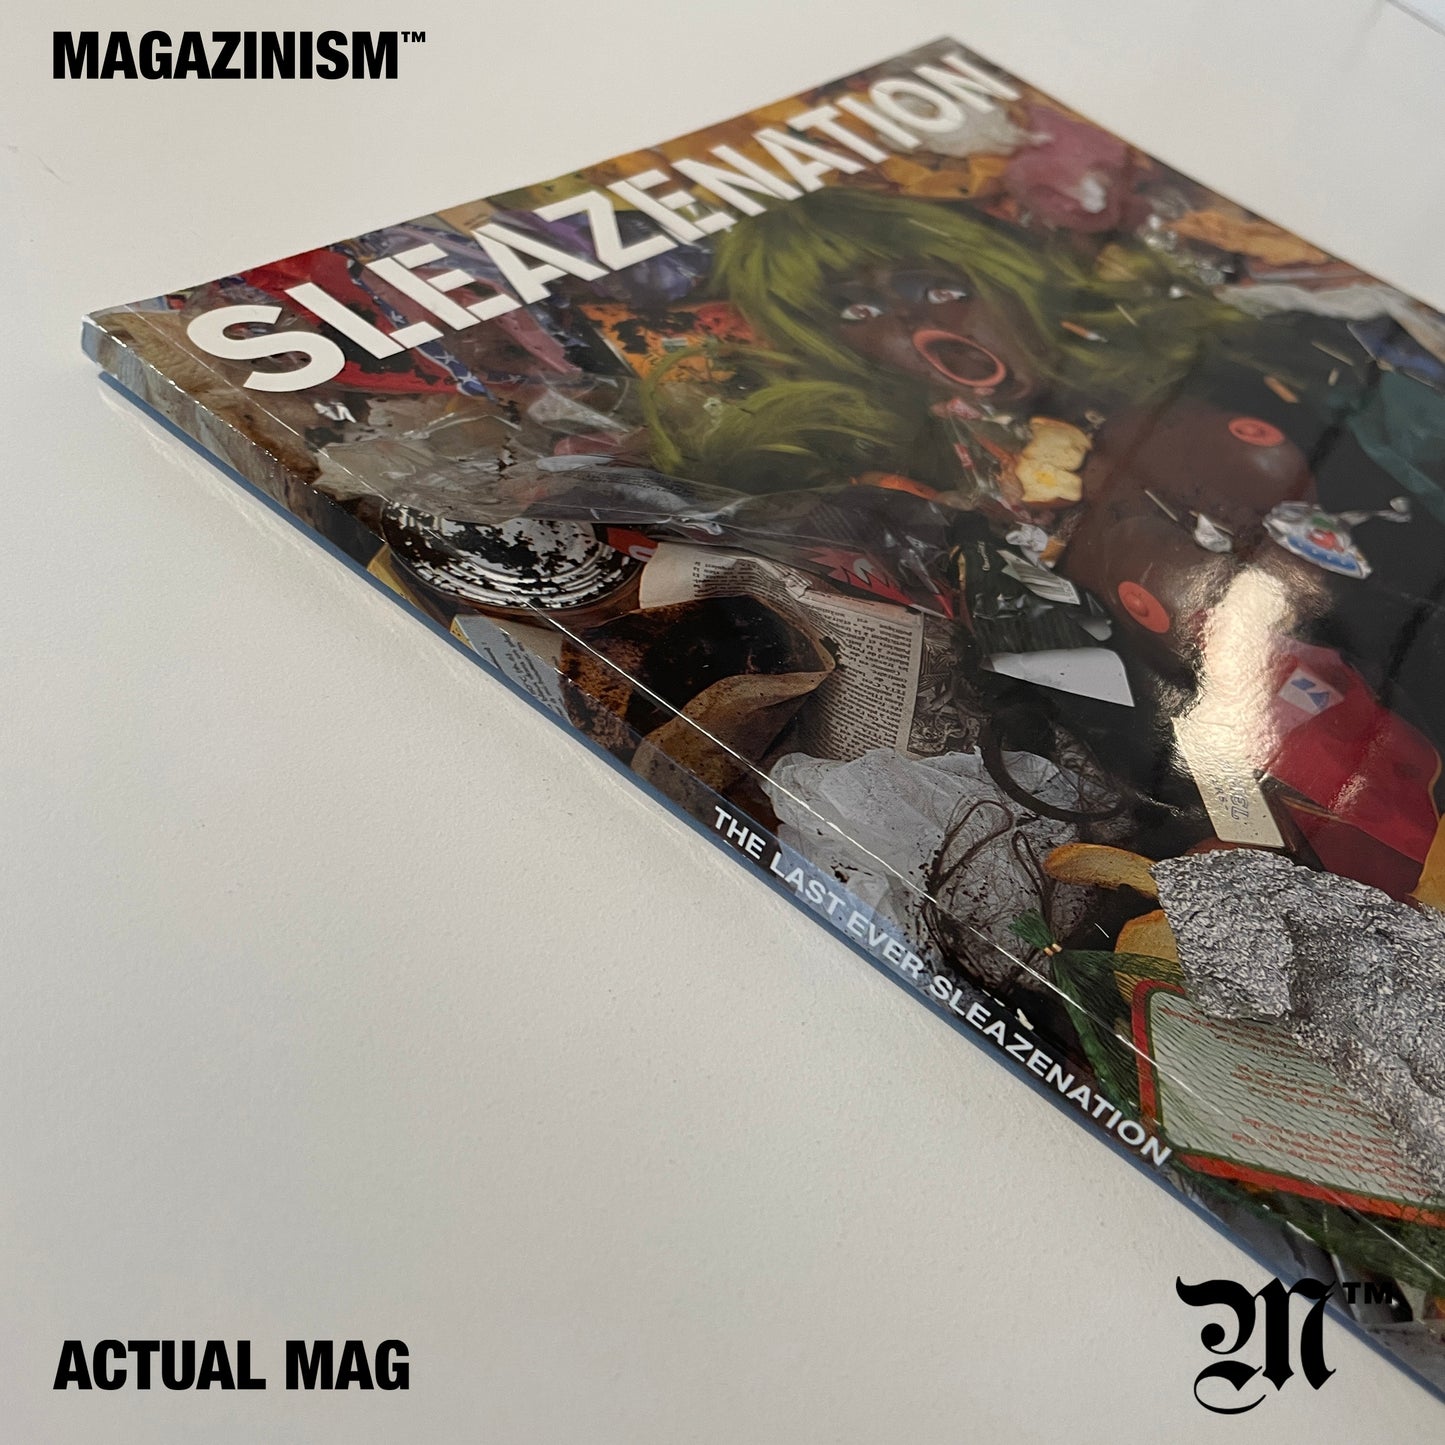 Sleazenation 2004 - Final Issue